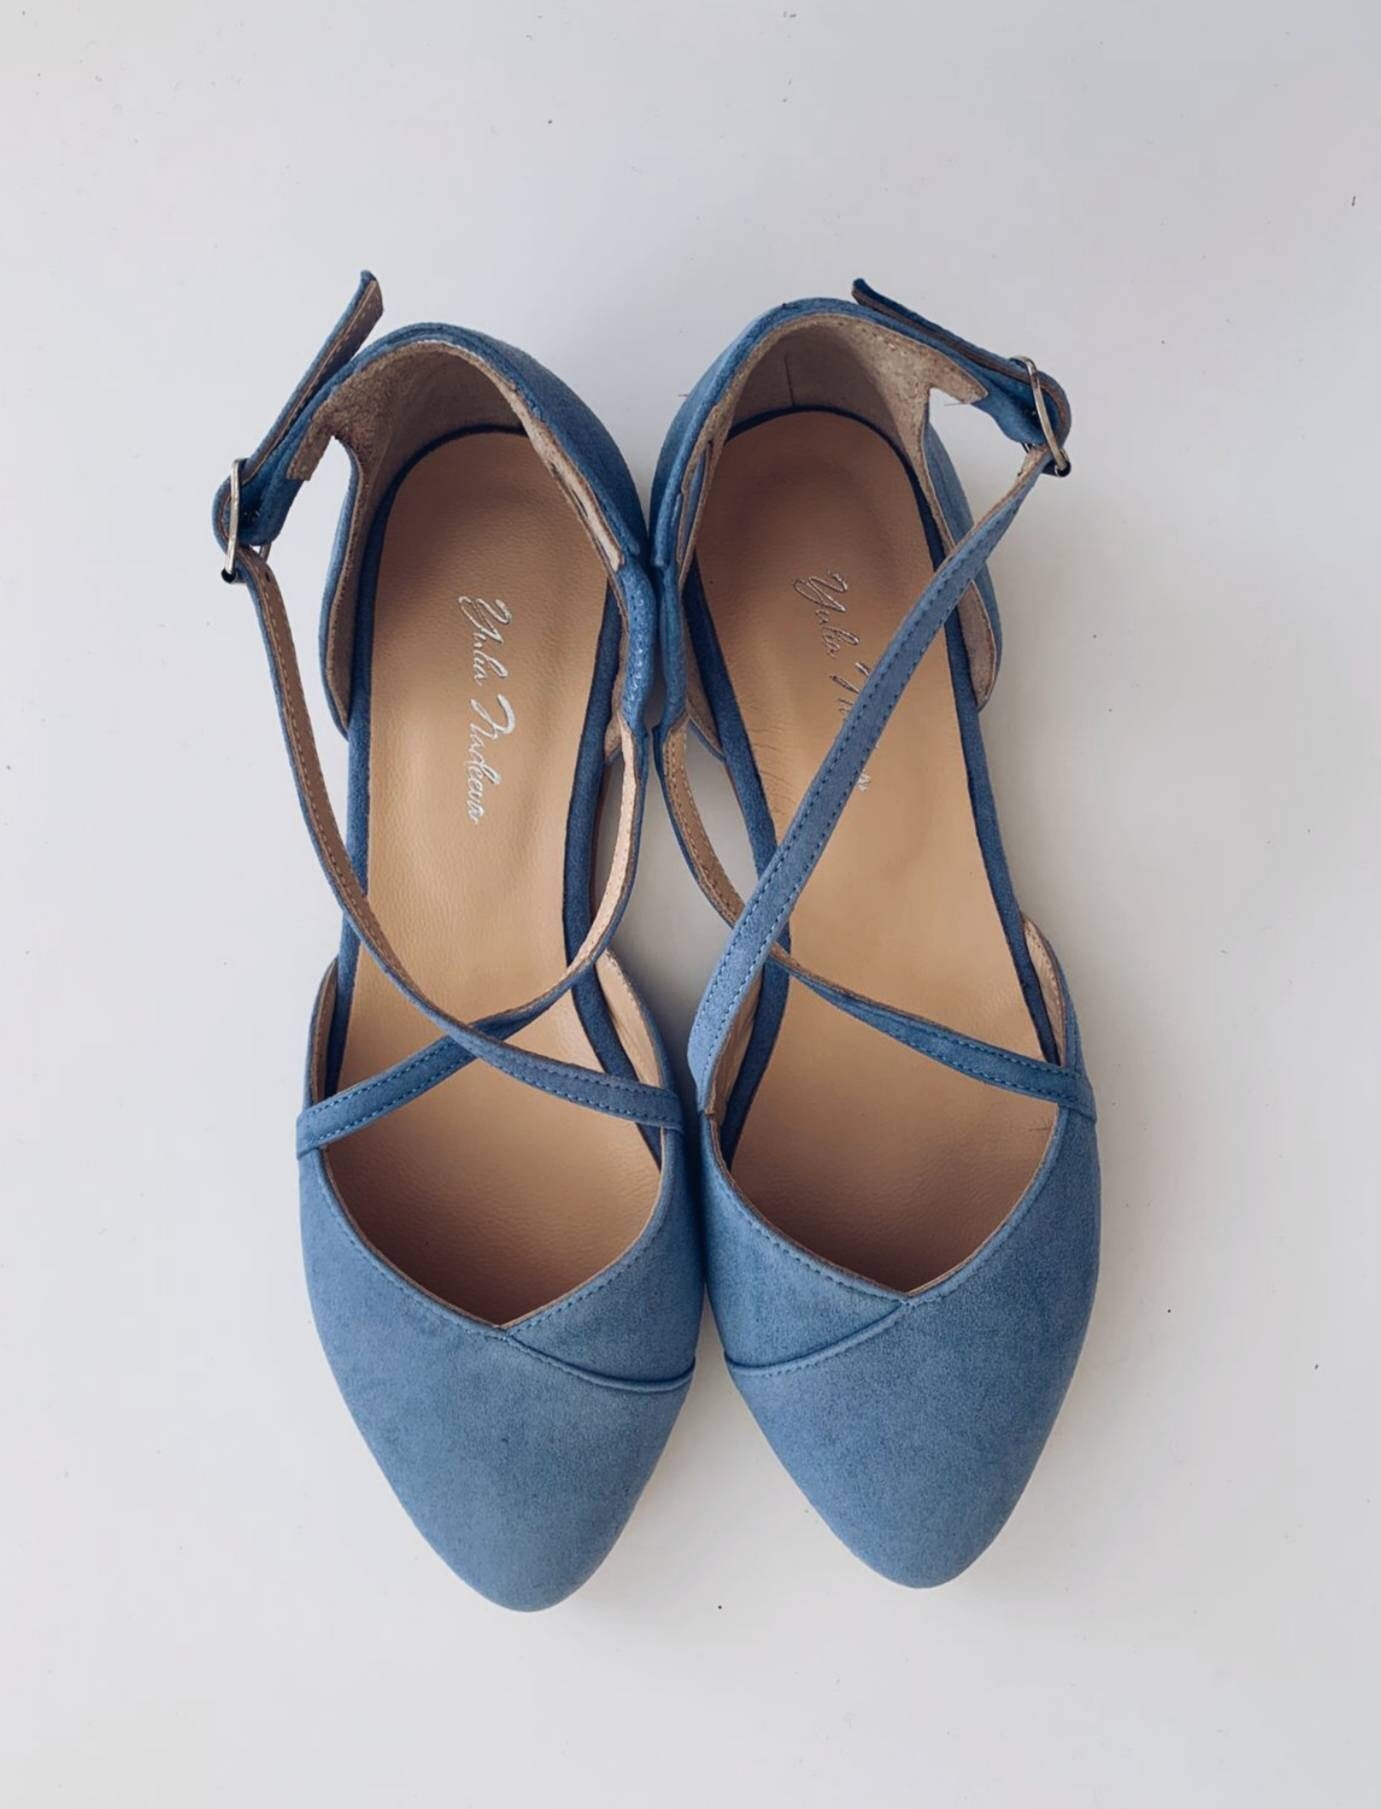 Wedding Shoes Dusty Blue Flats Something Blue Shoes - Etsy UK